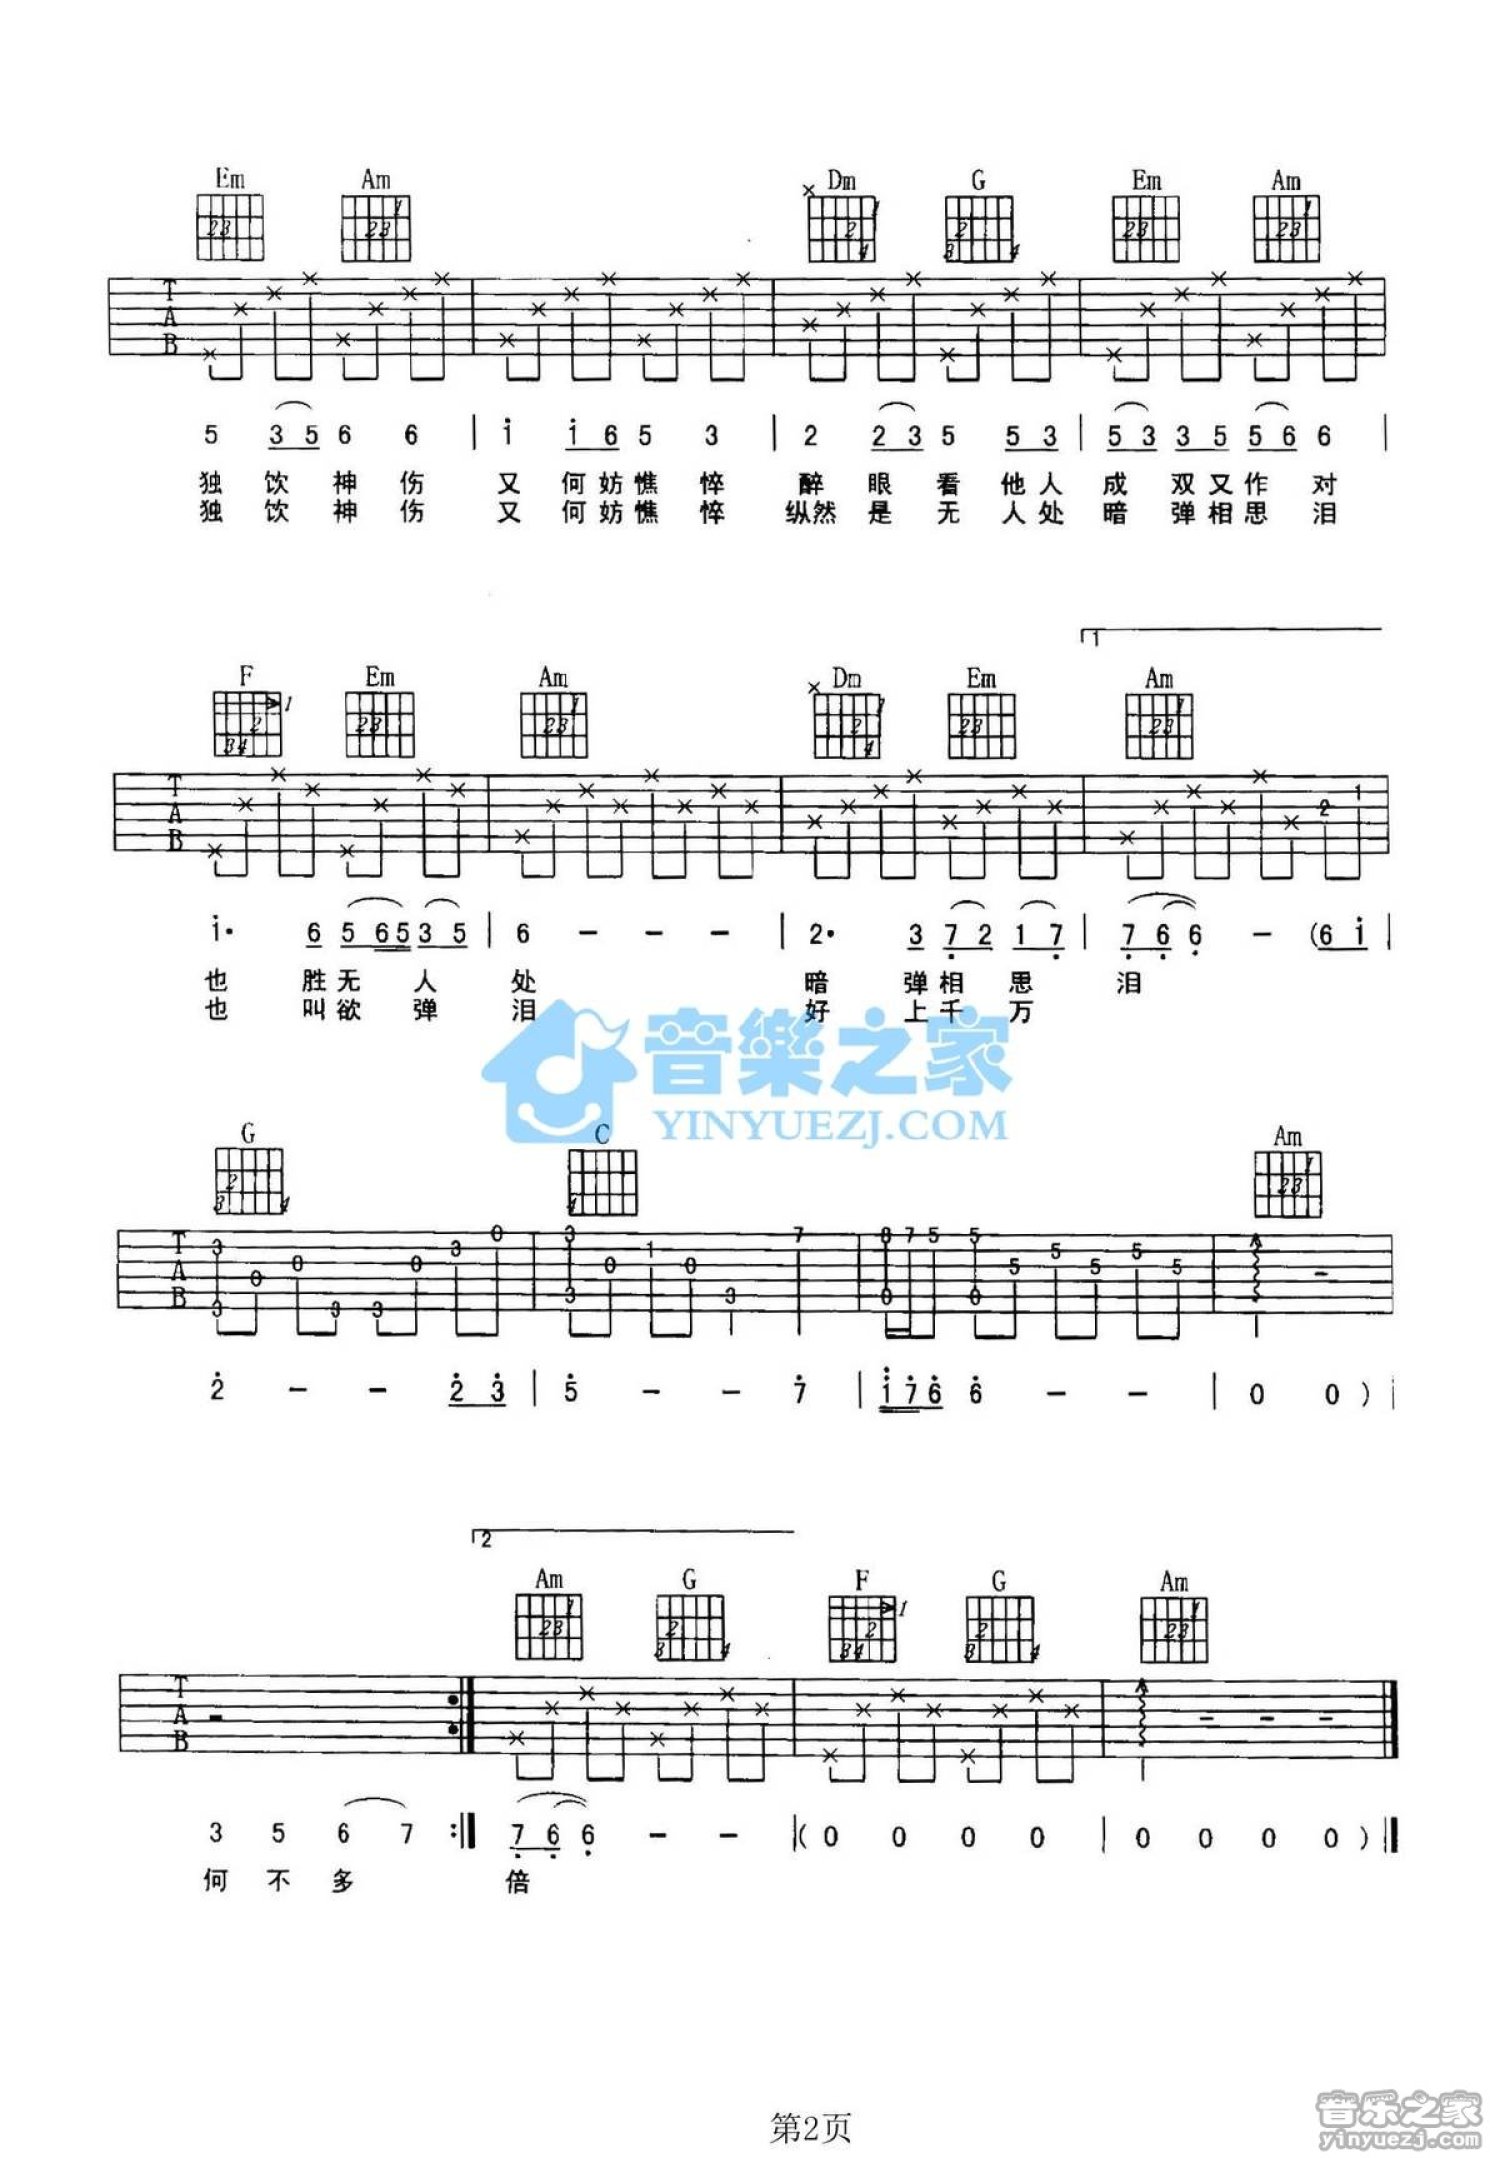 无题吉他谱 - 陈亮 - 吉他独奏谱 - 北尚吉他 - 琴谱网